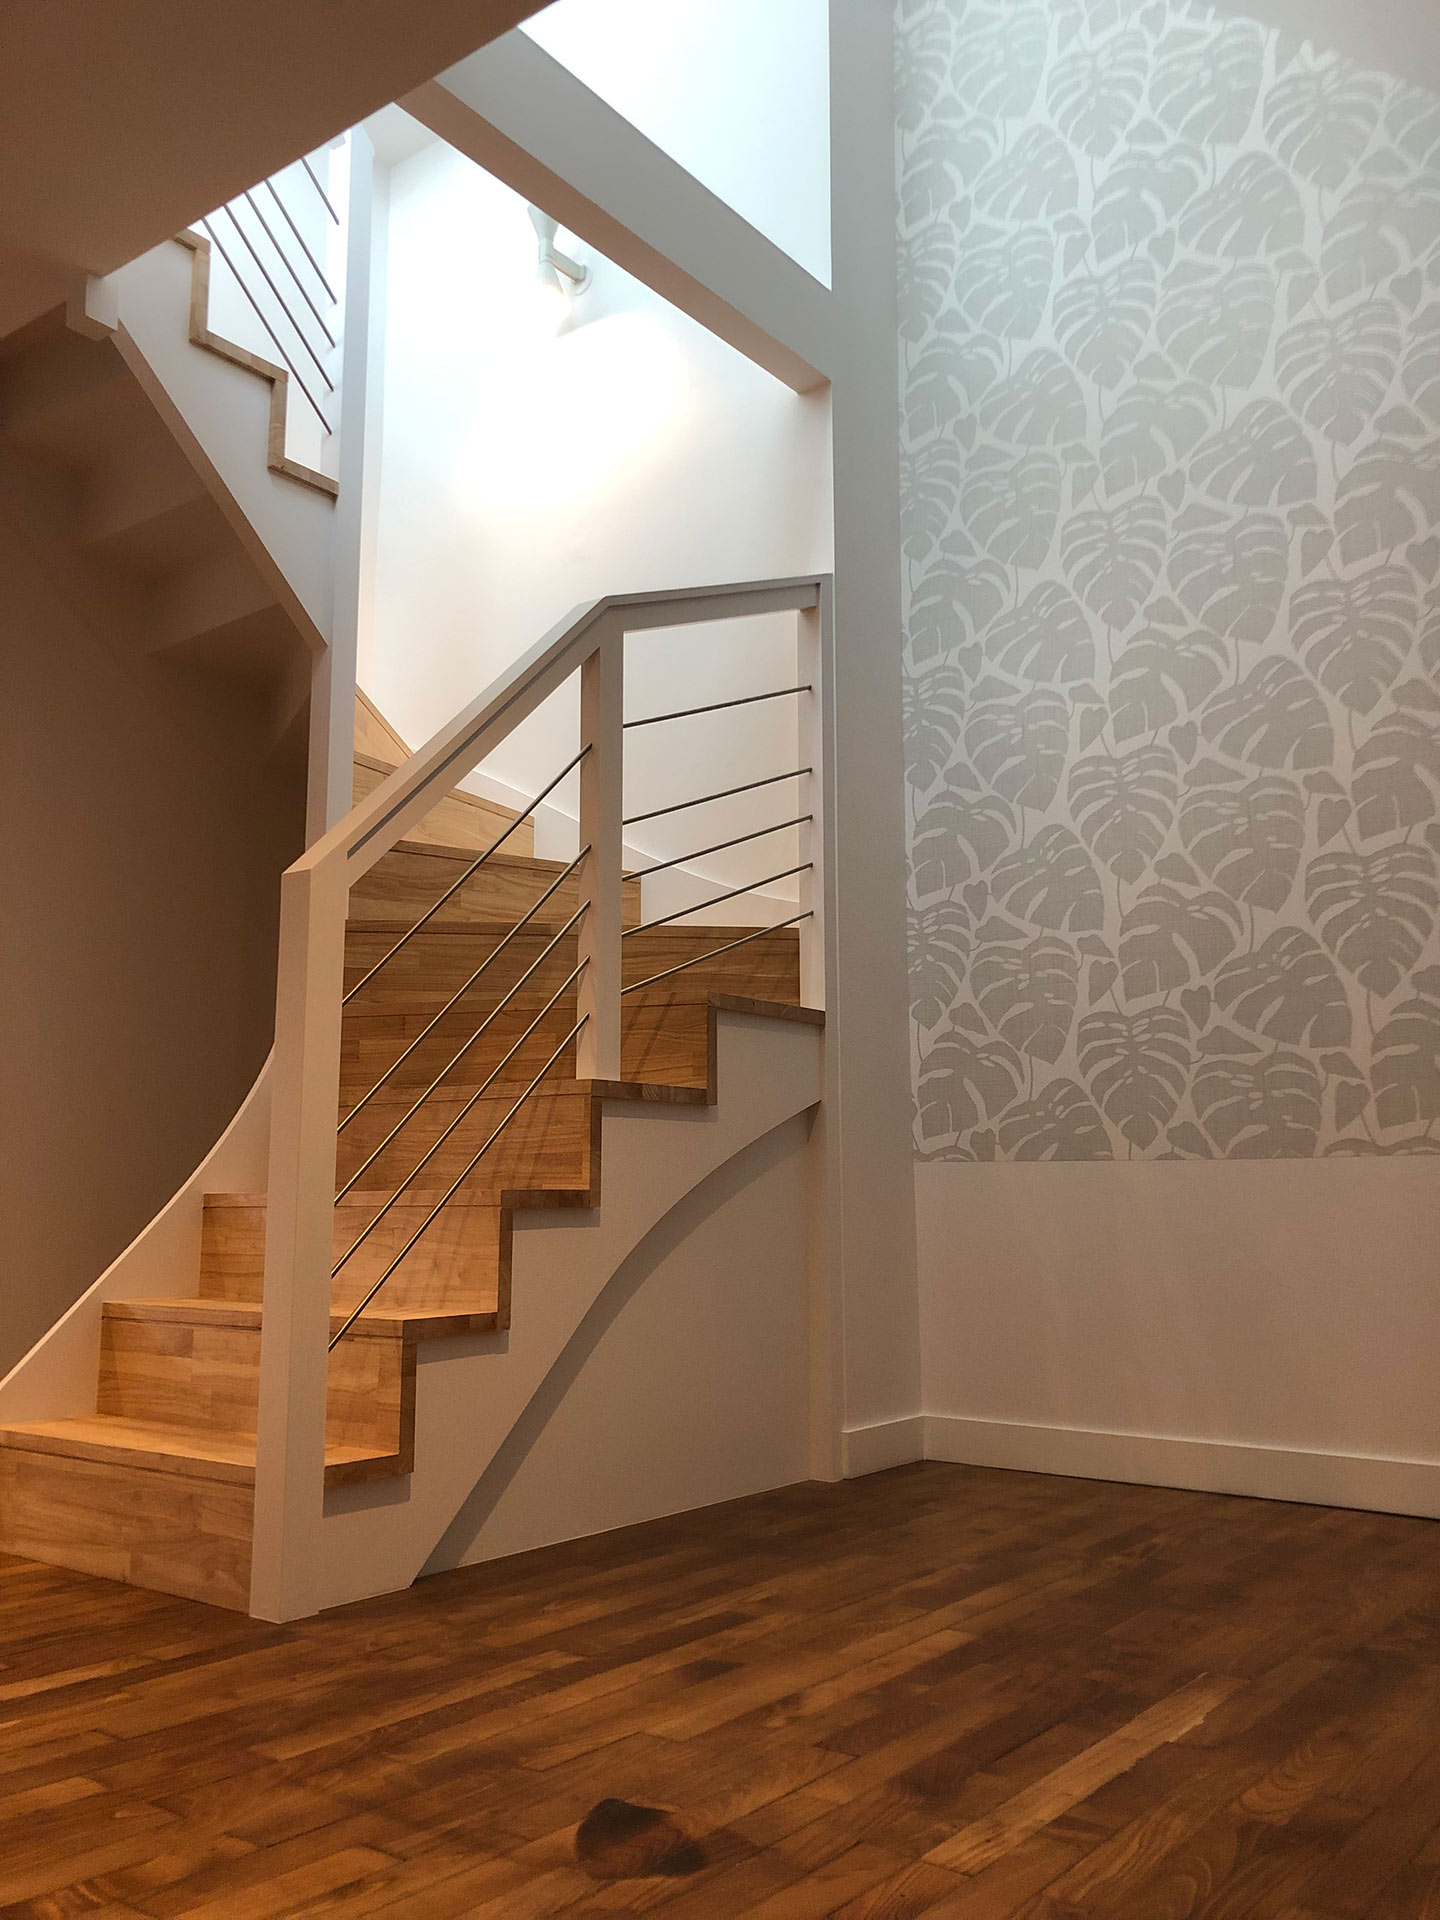 Escalier en bois avec murs en papier peint